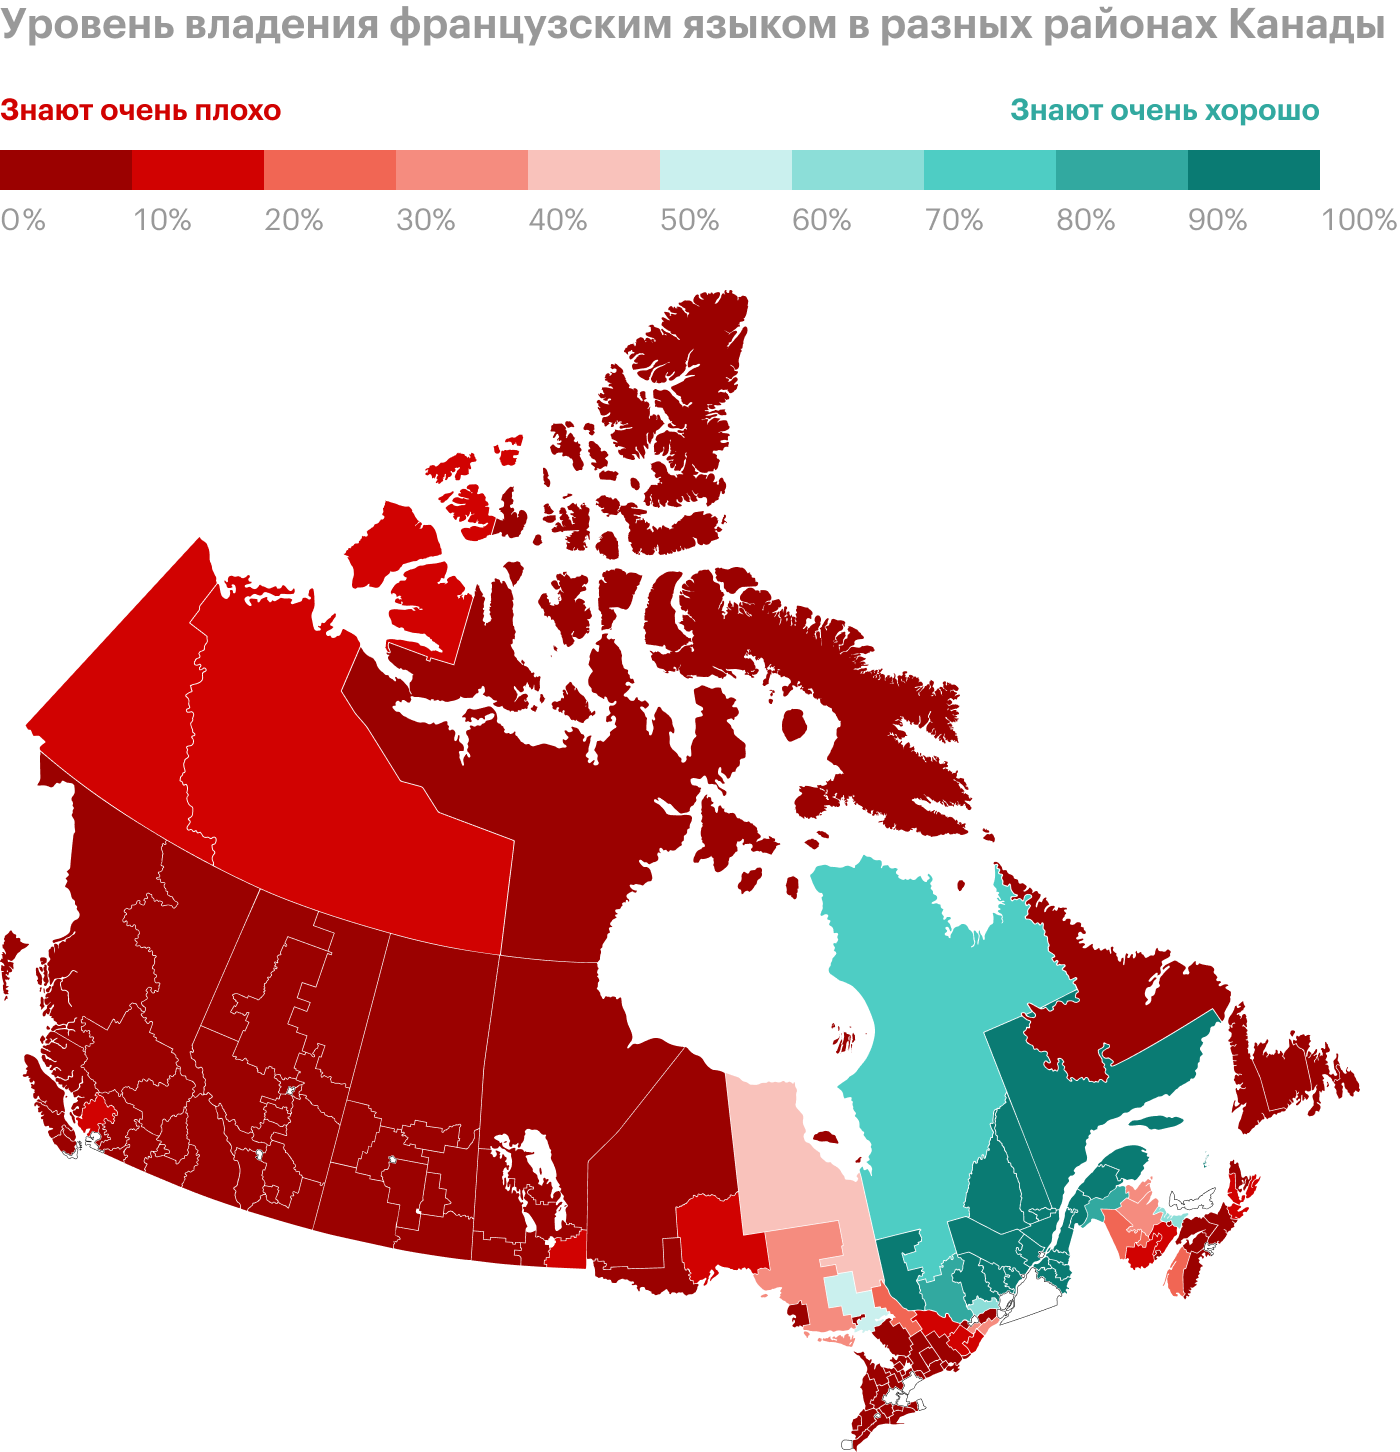 Уровень владения французским языком в разных районах Канады. Как видно, на восточном побережье почти все знают этот язык. Источник: reddit.com